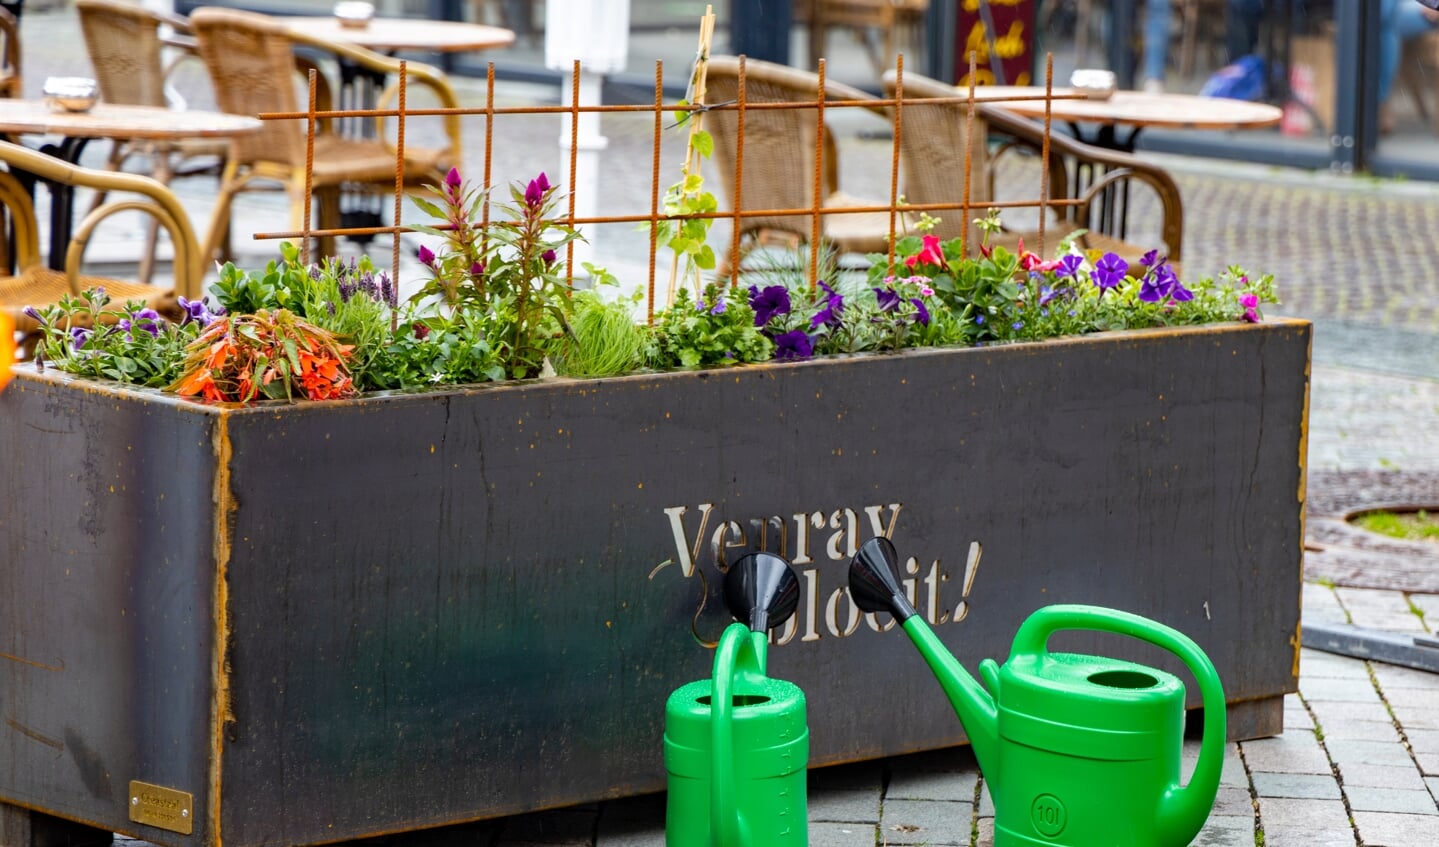 De Venray Bloeit-bloembakken, waarvan er in het centrum dertig staan, werden mei vorig jaar, gepresenteerd. 